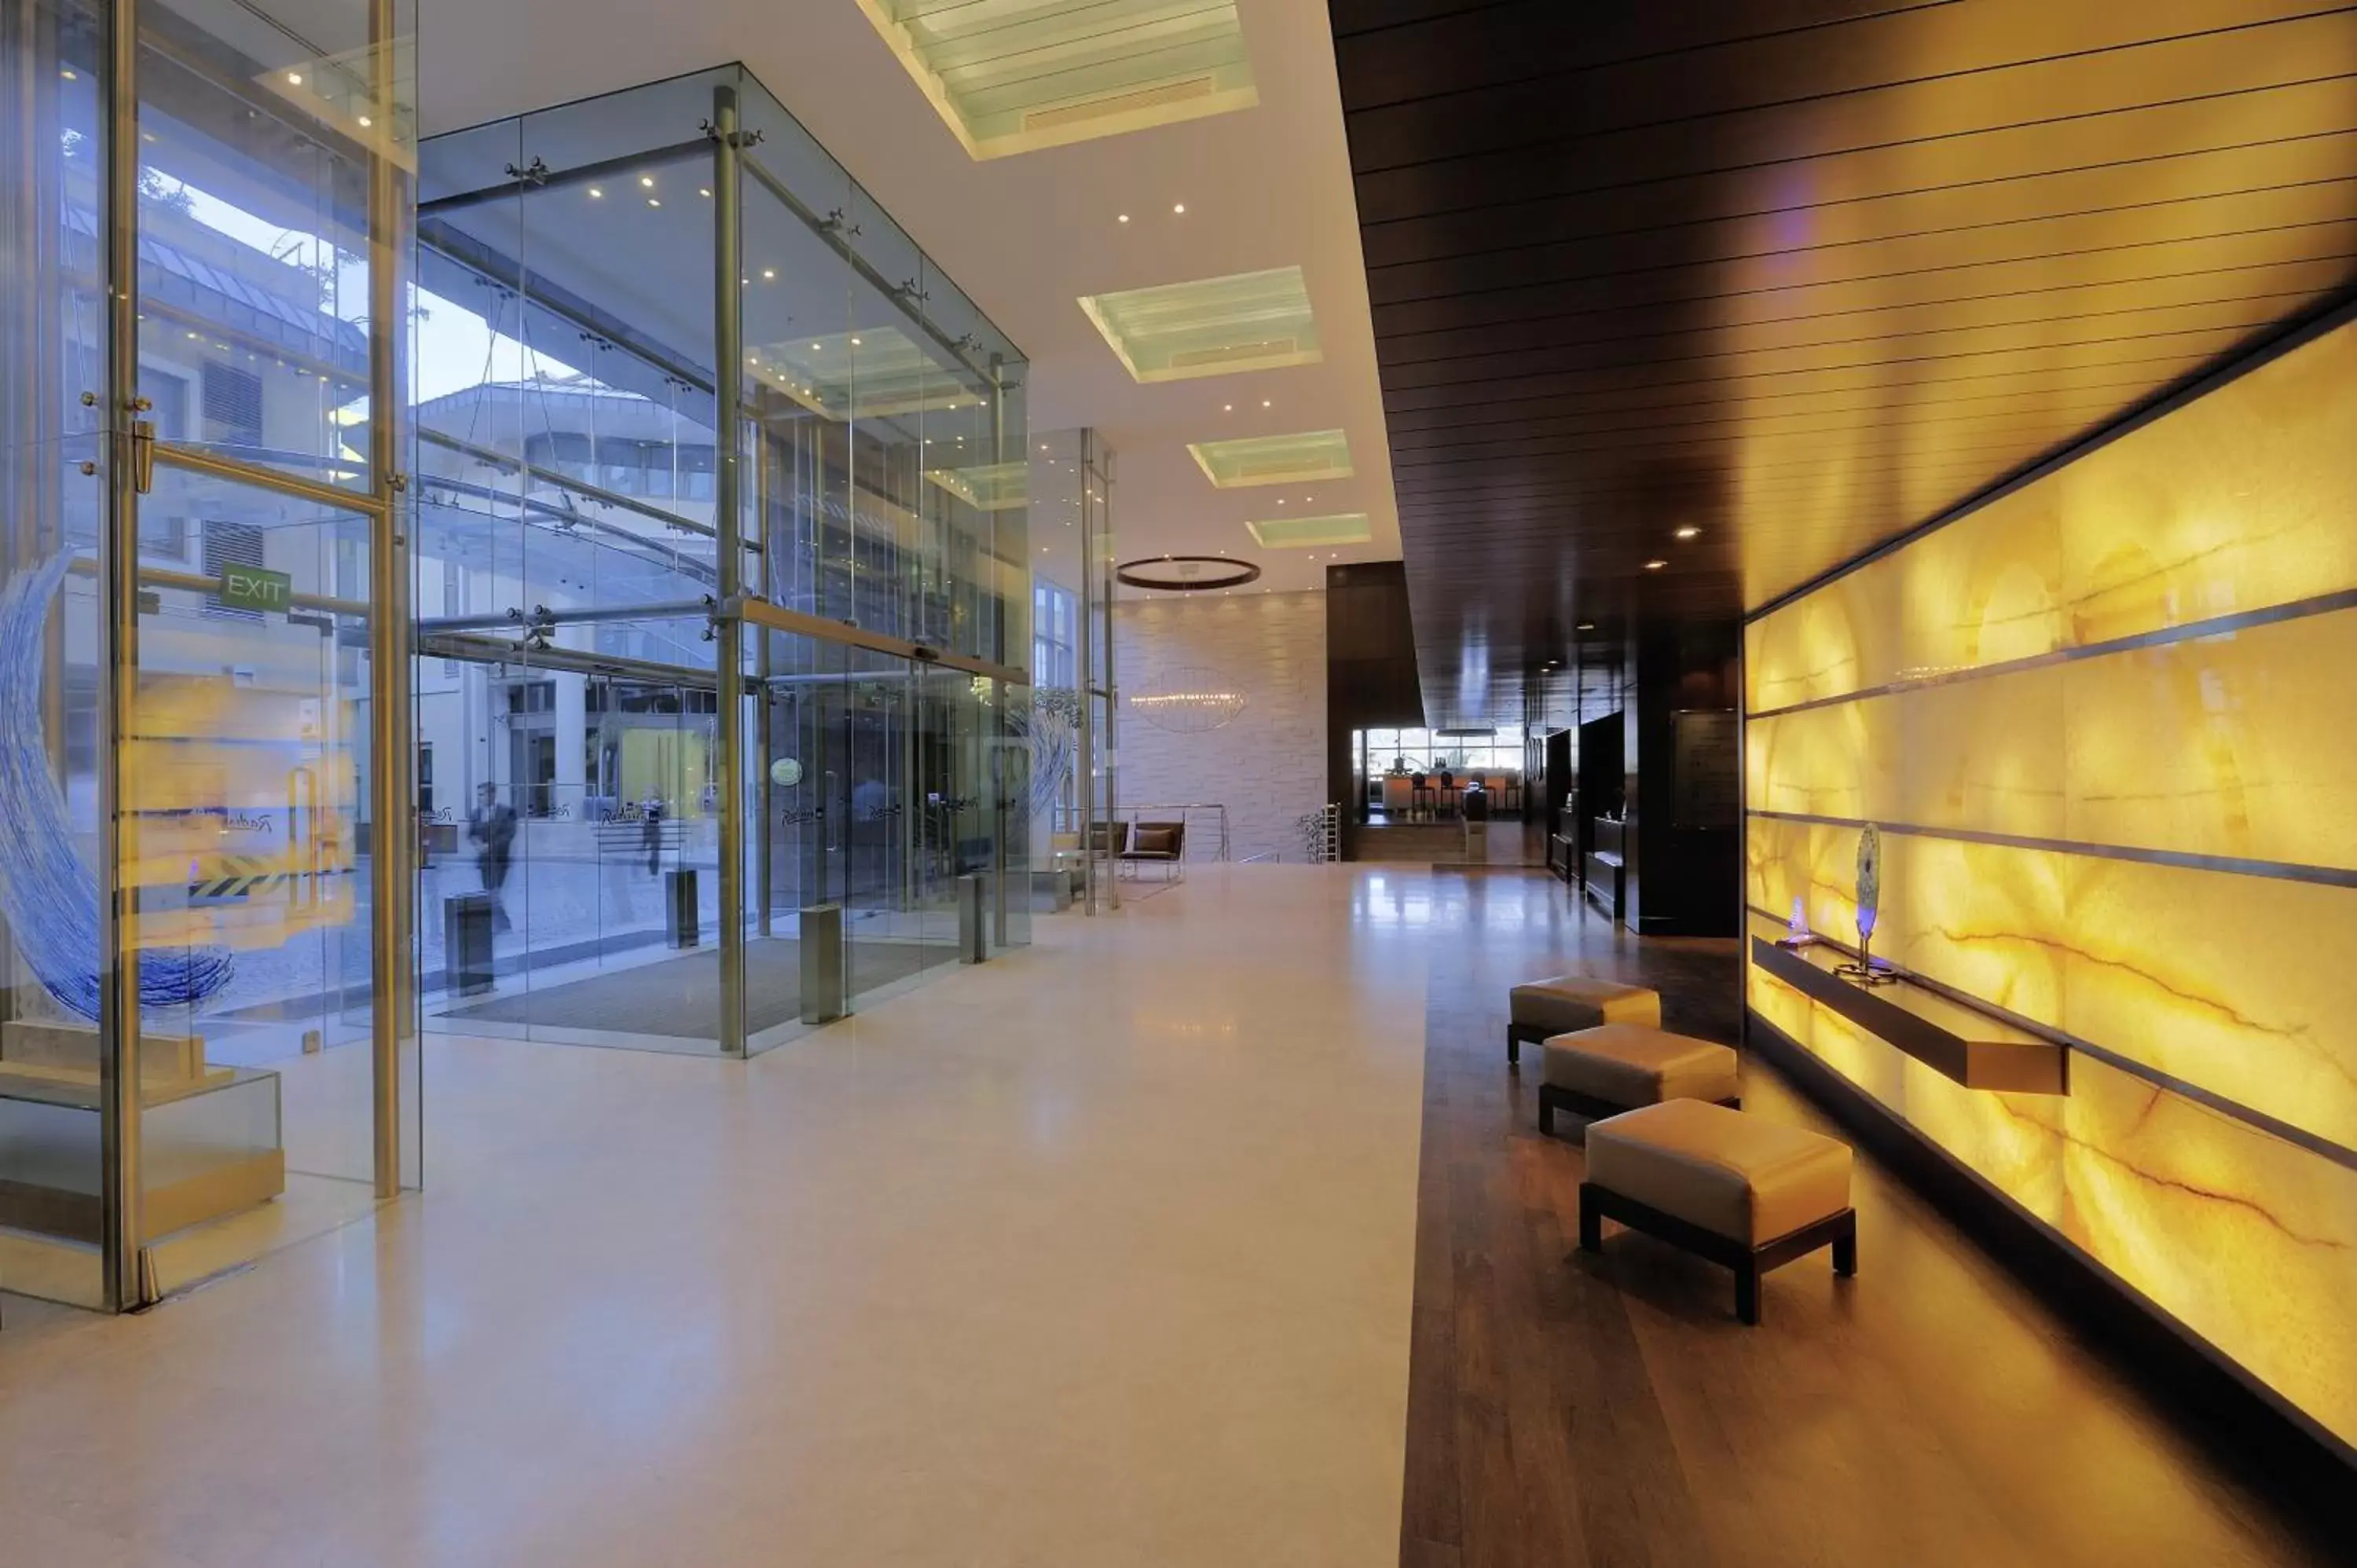 Lobby or reception in Radisson Blu Bosphorus Hotel